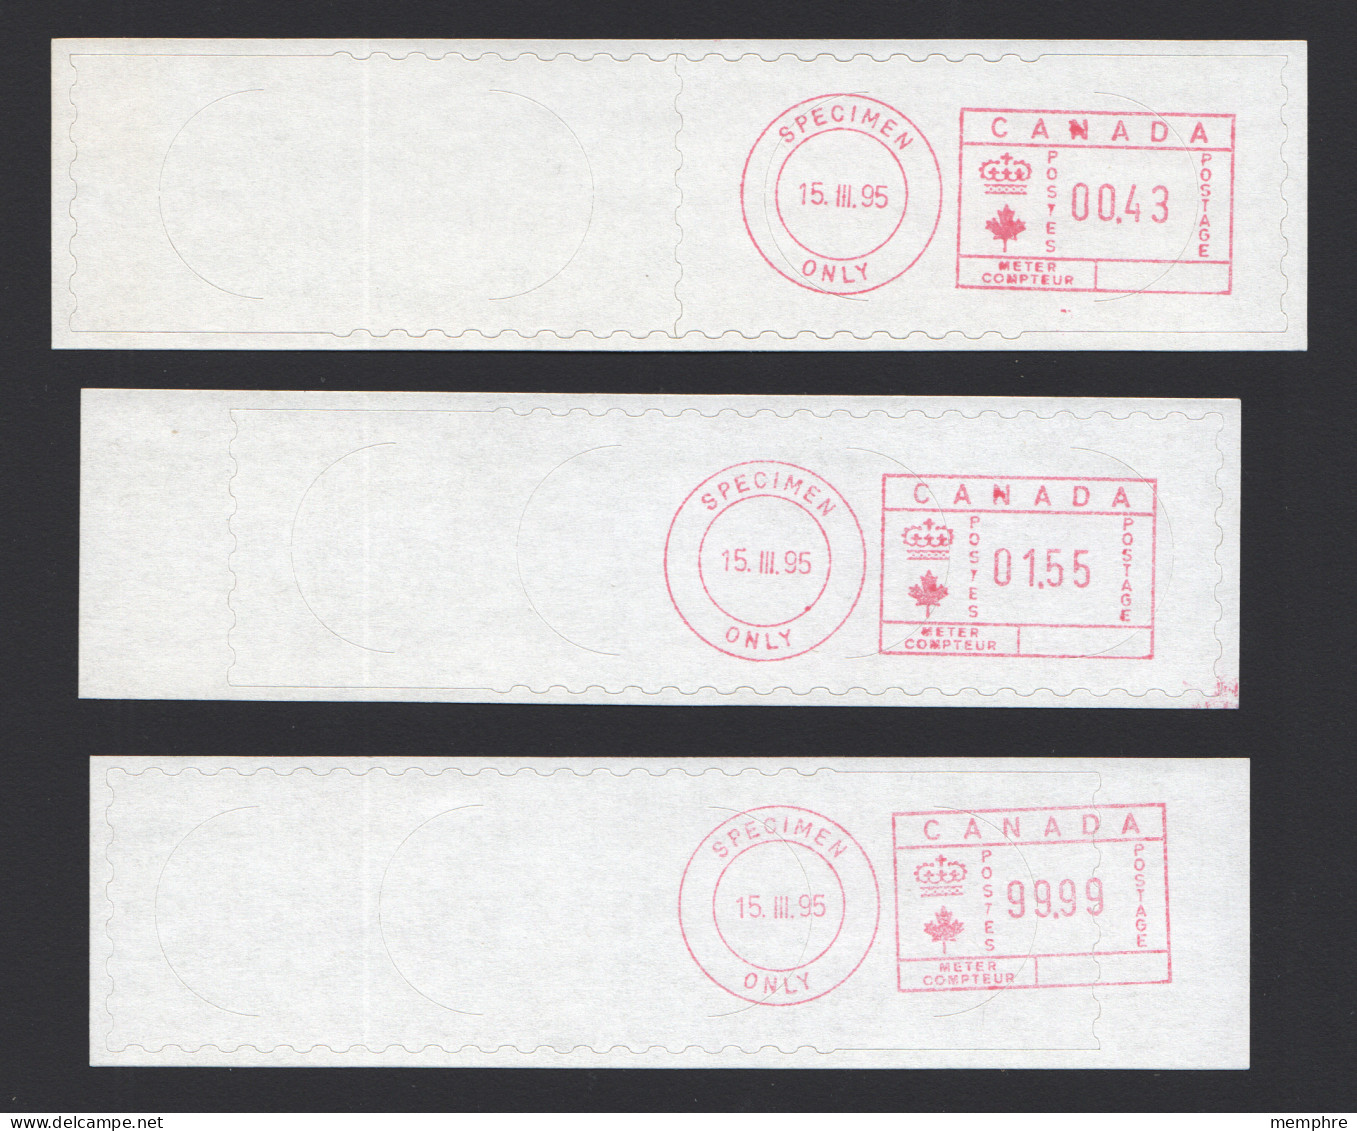 1995  Set Of 3 Ascom Hasler SPECIMEN  Franking Labels $0,43, $1.55 And $99,99 - Vignettes D'affranchissement (ATM) - Stic'n'Tic